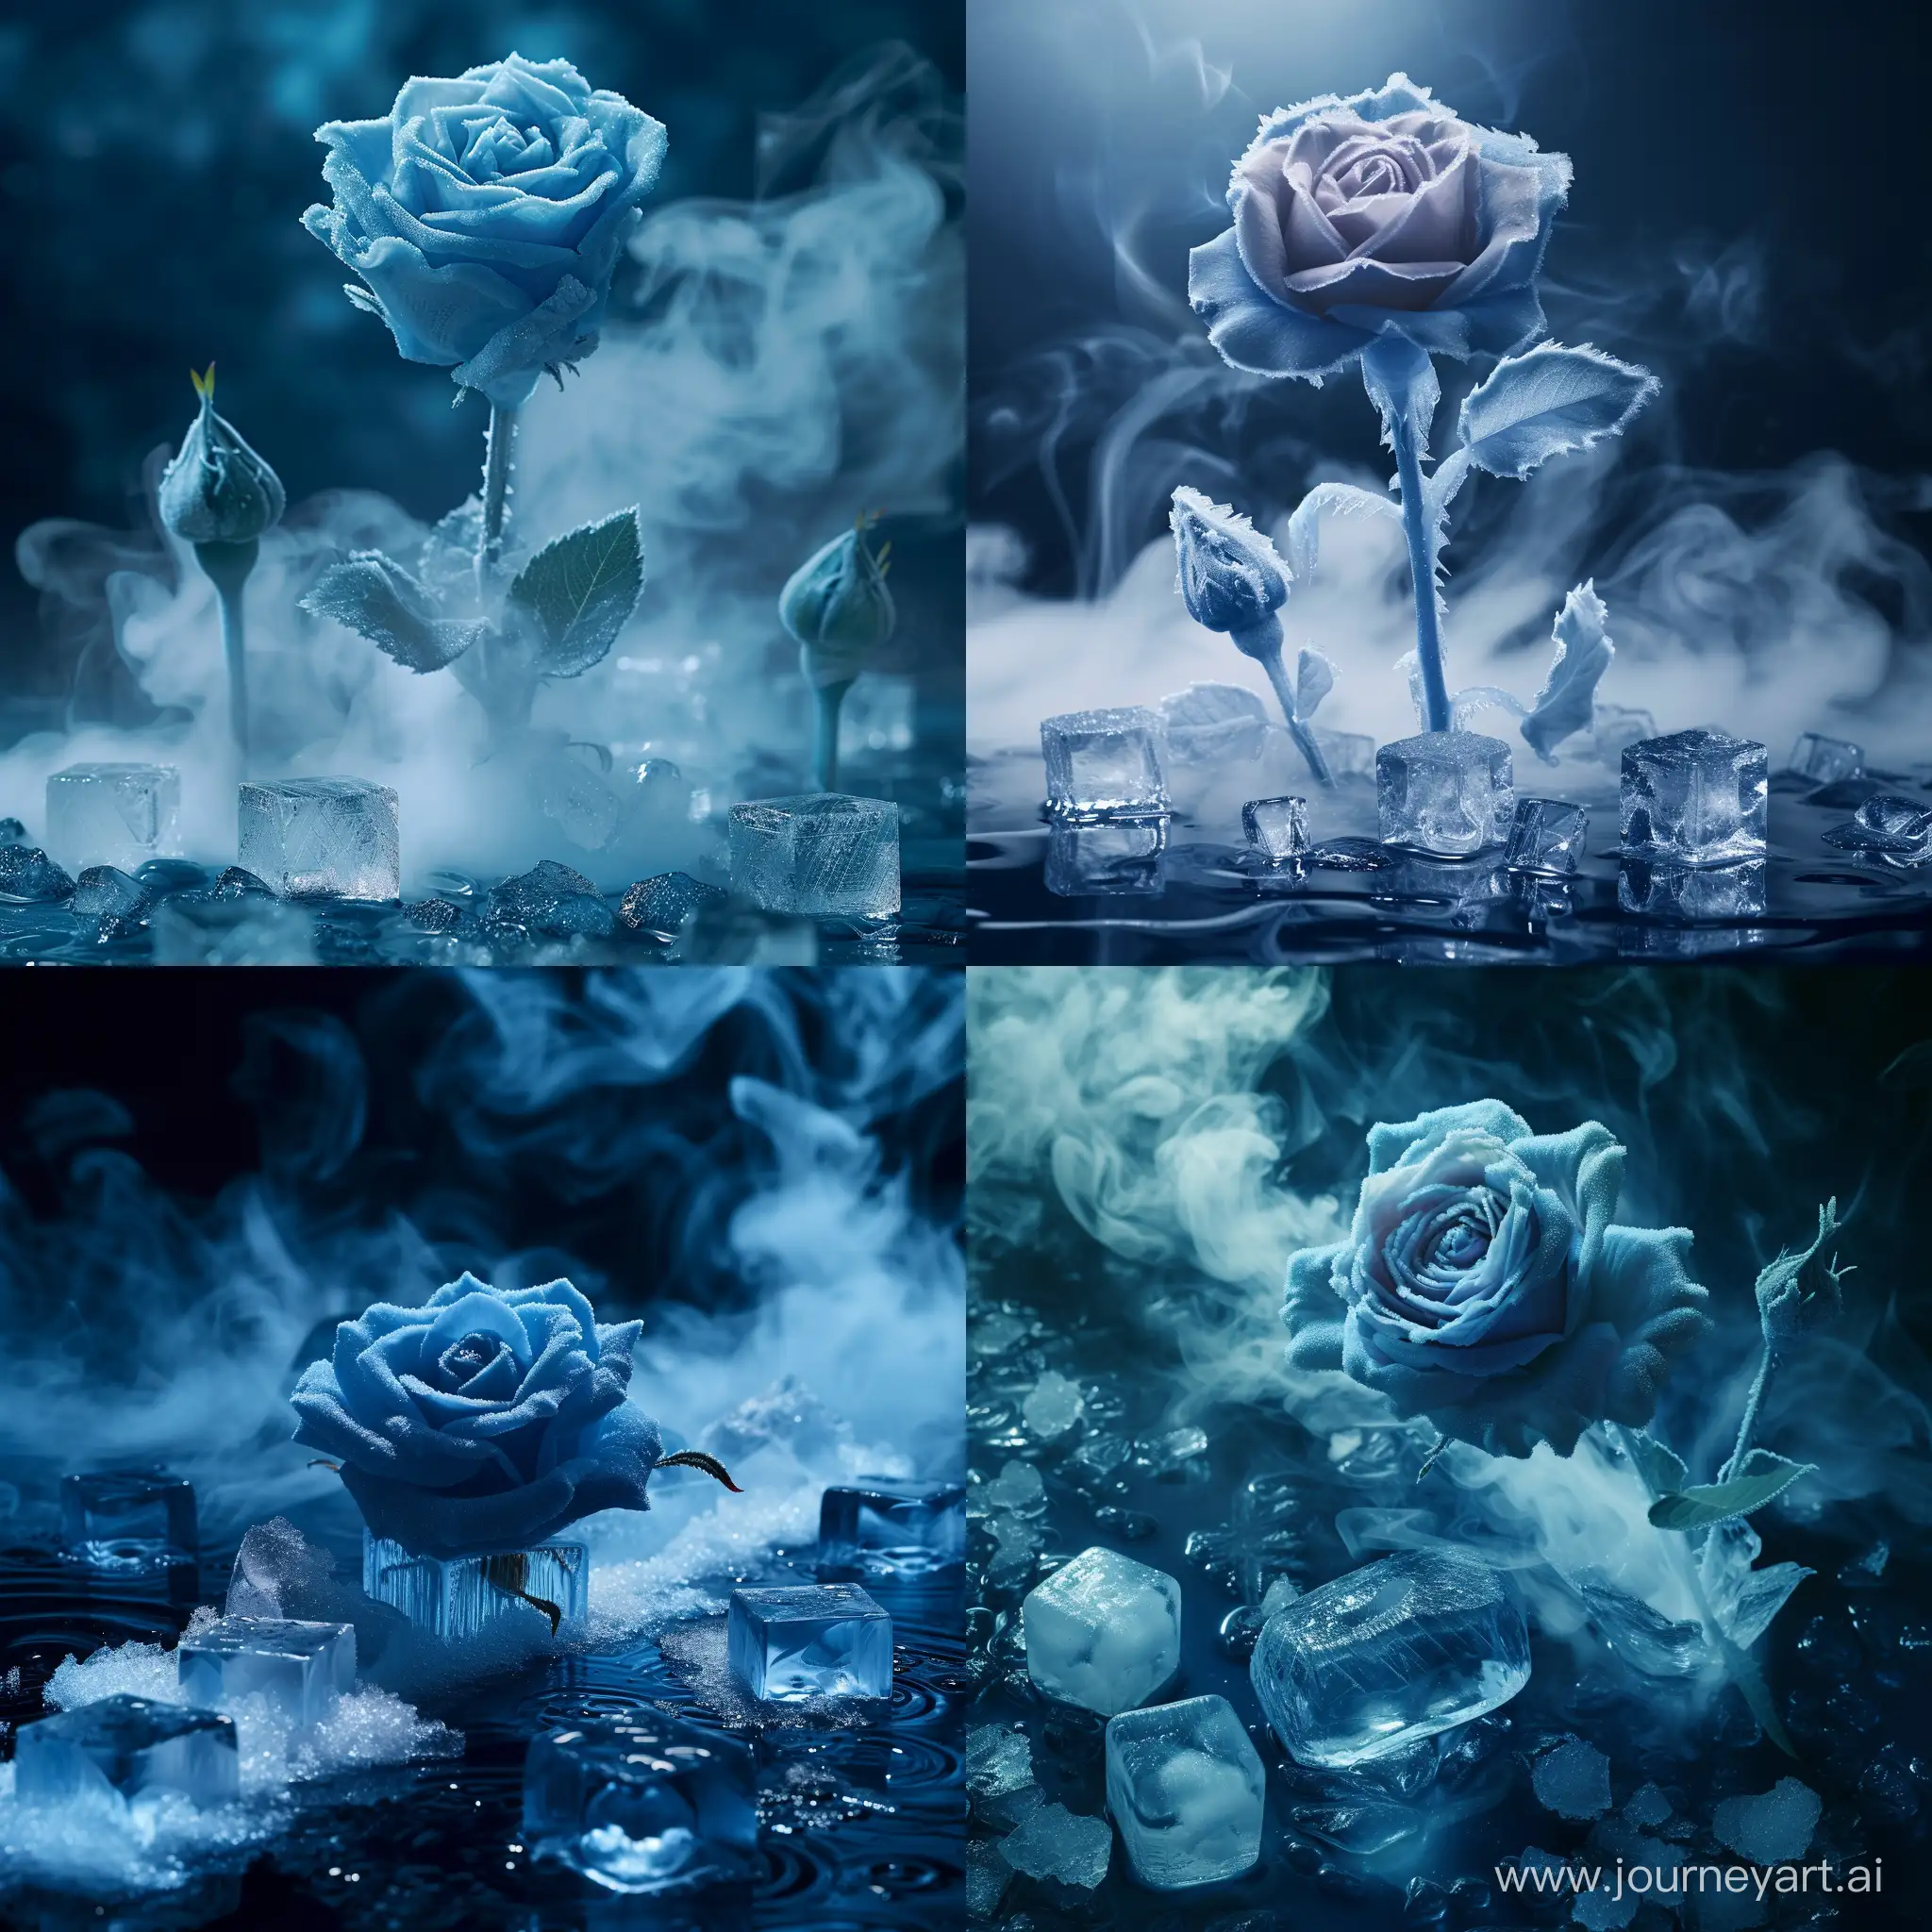 синяя шипованная роза во льду на половину ее длины как будто она таит, вокруг нее немного кусочков льда в виде кубиков, все в темных голубовато синих томах с белым дымом